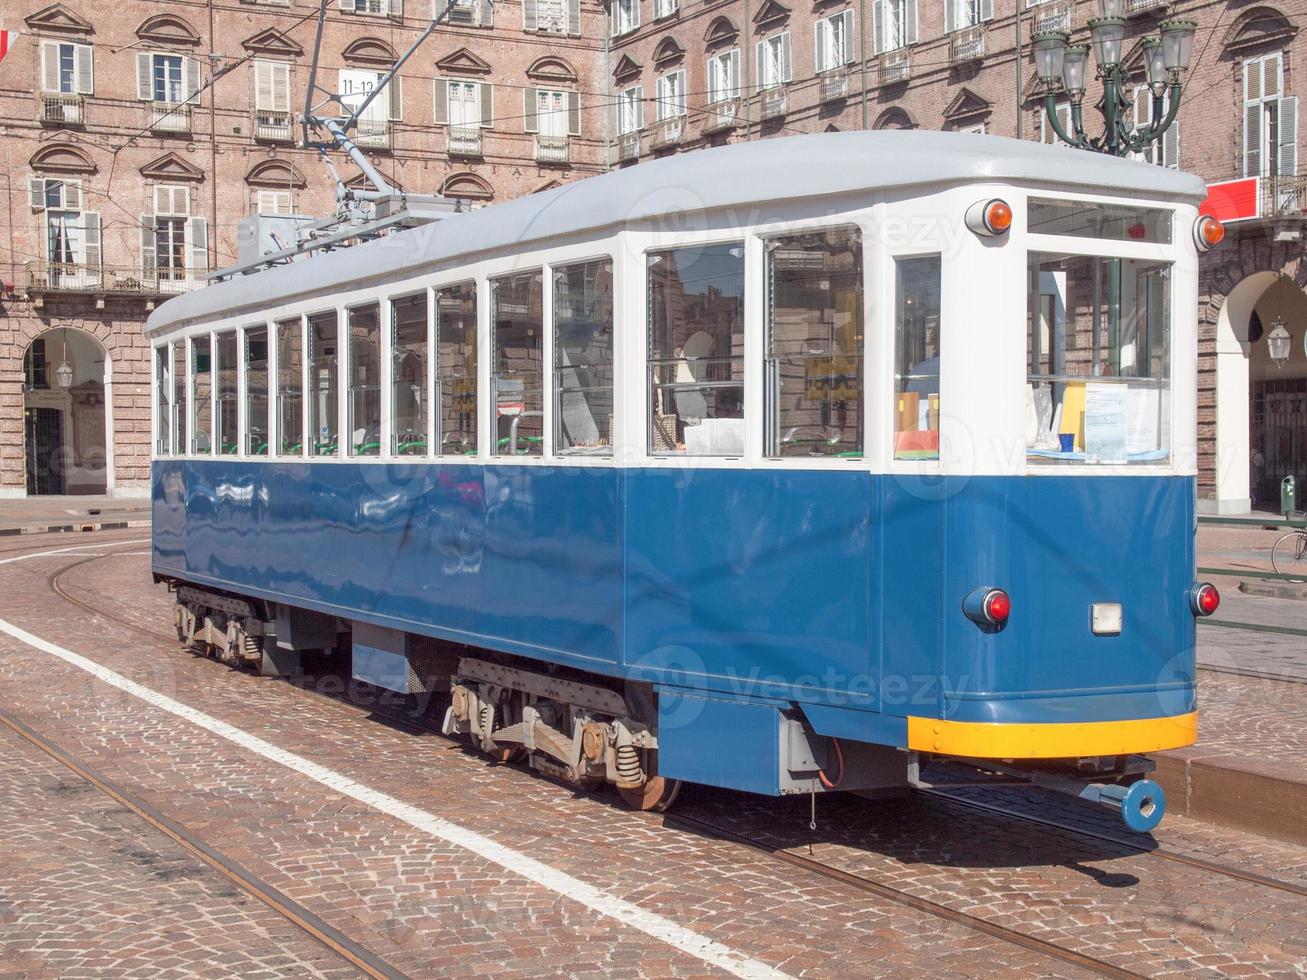 un tram storico d'epoca a torino, italia foto